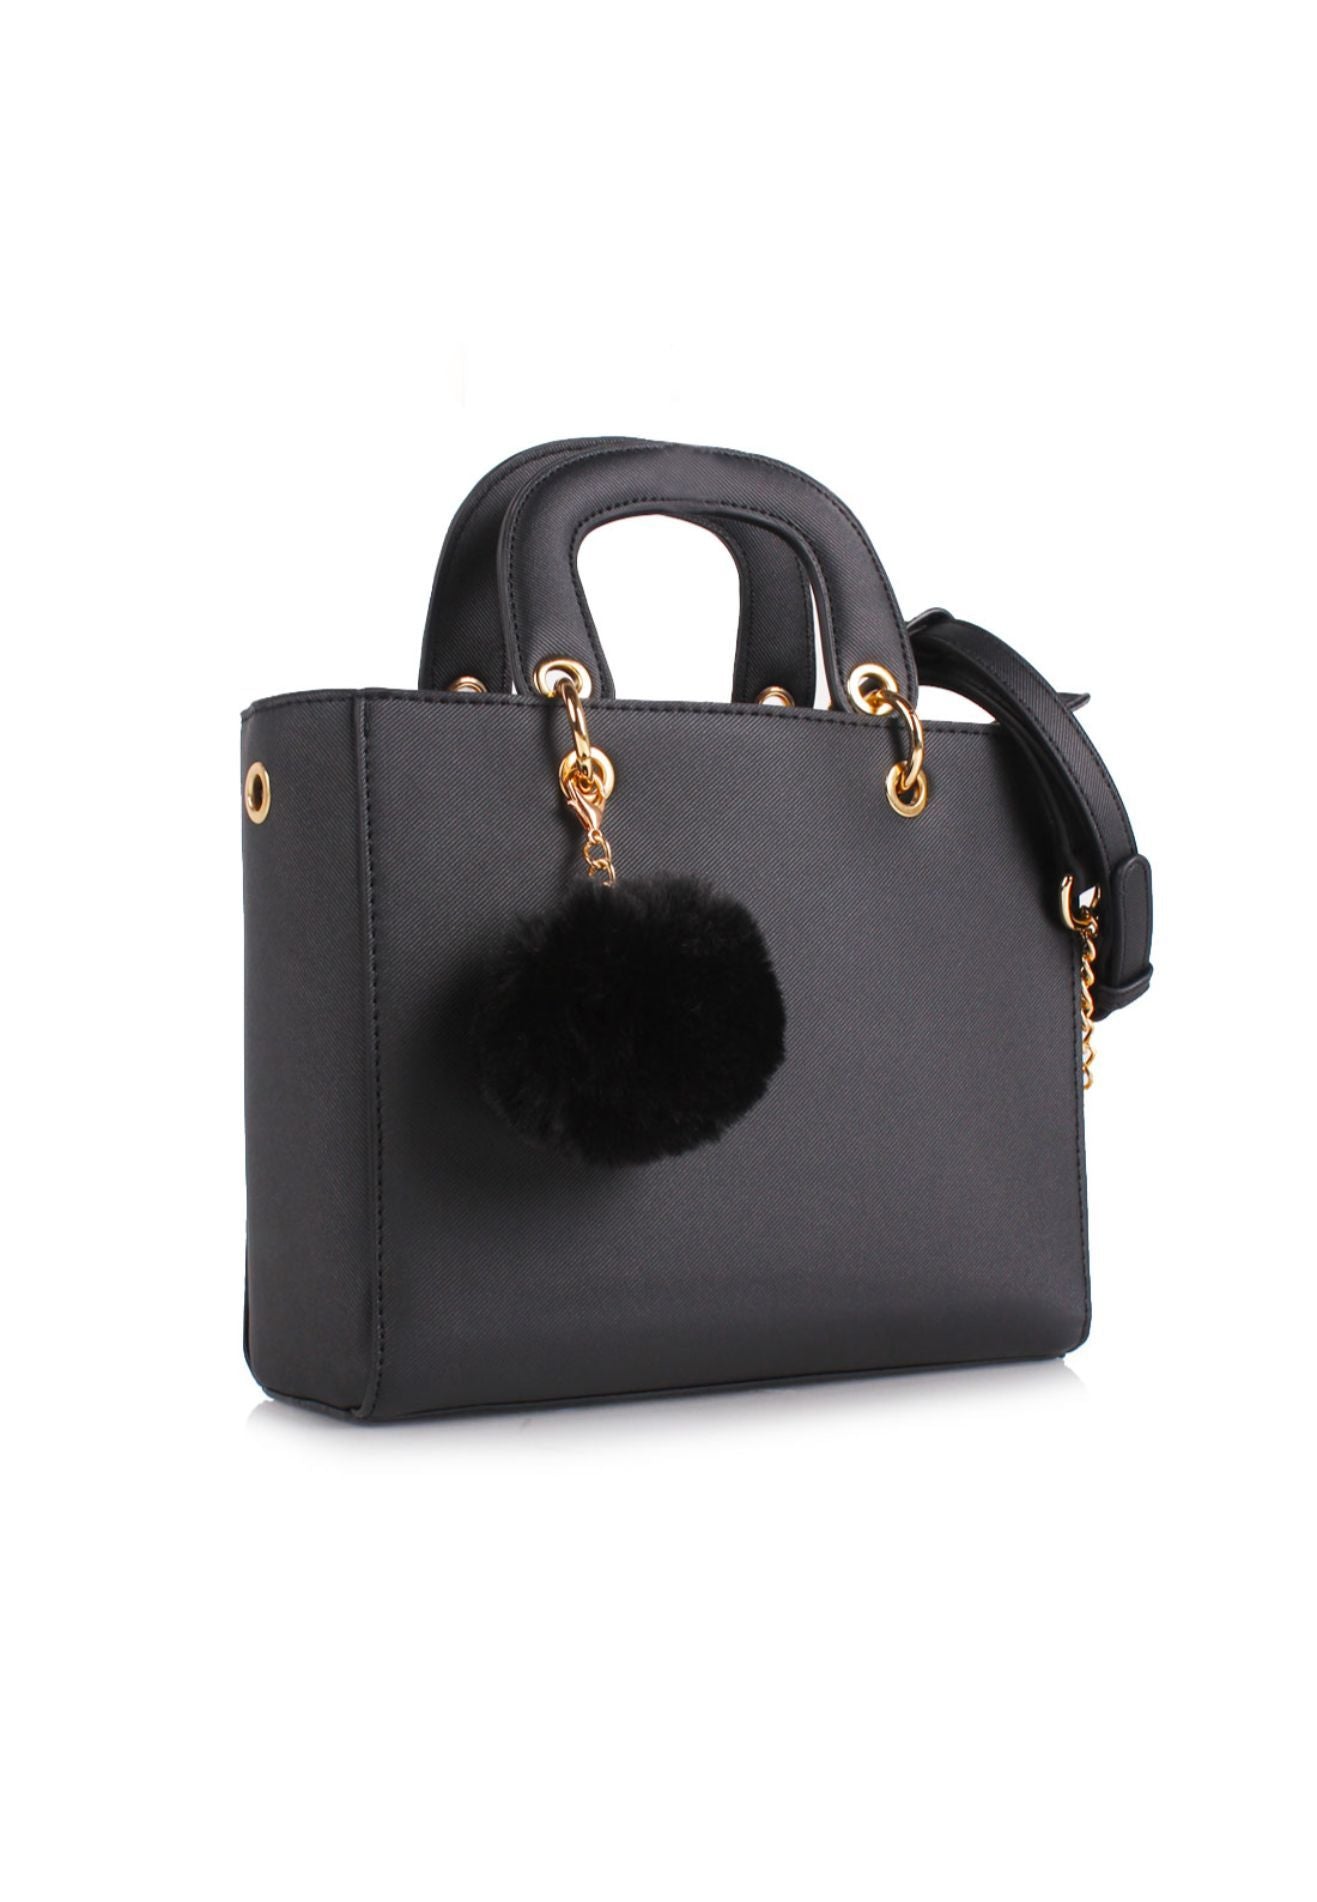 Black Handbag with fur fuzzy ball charms